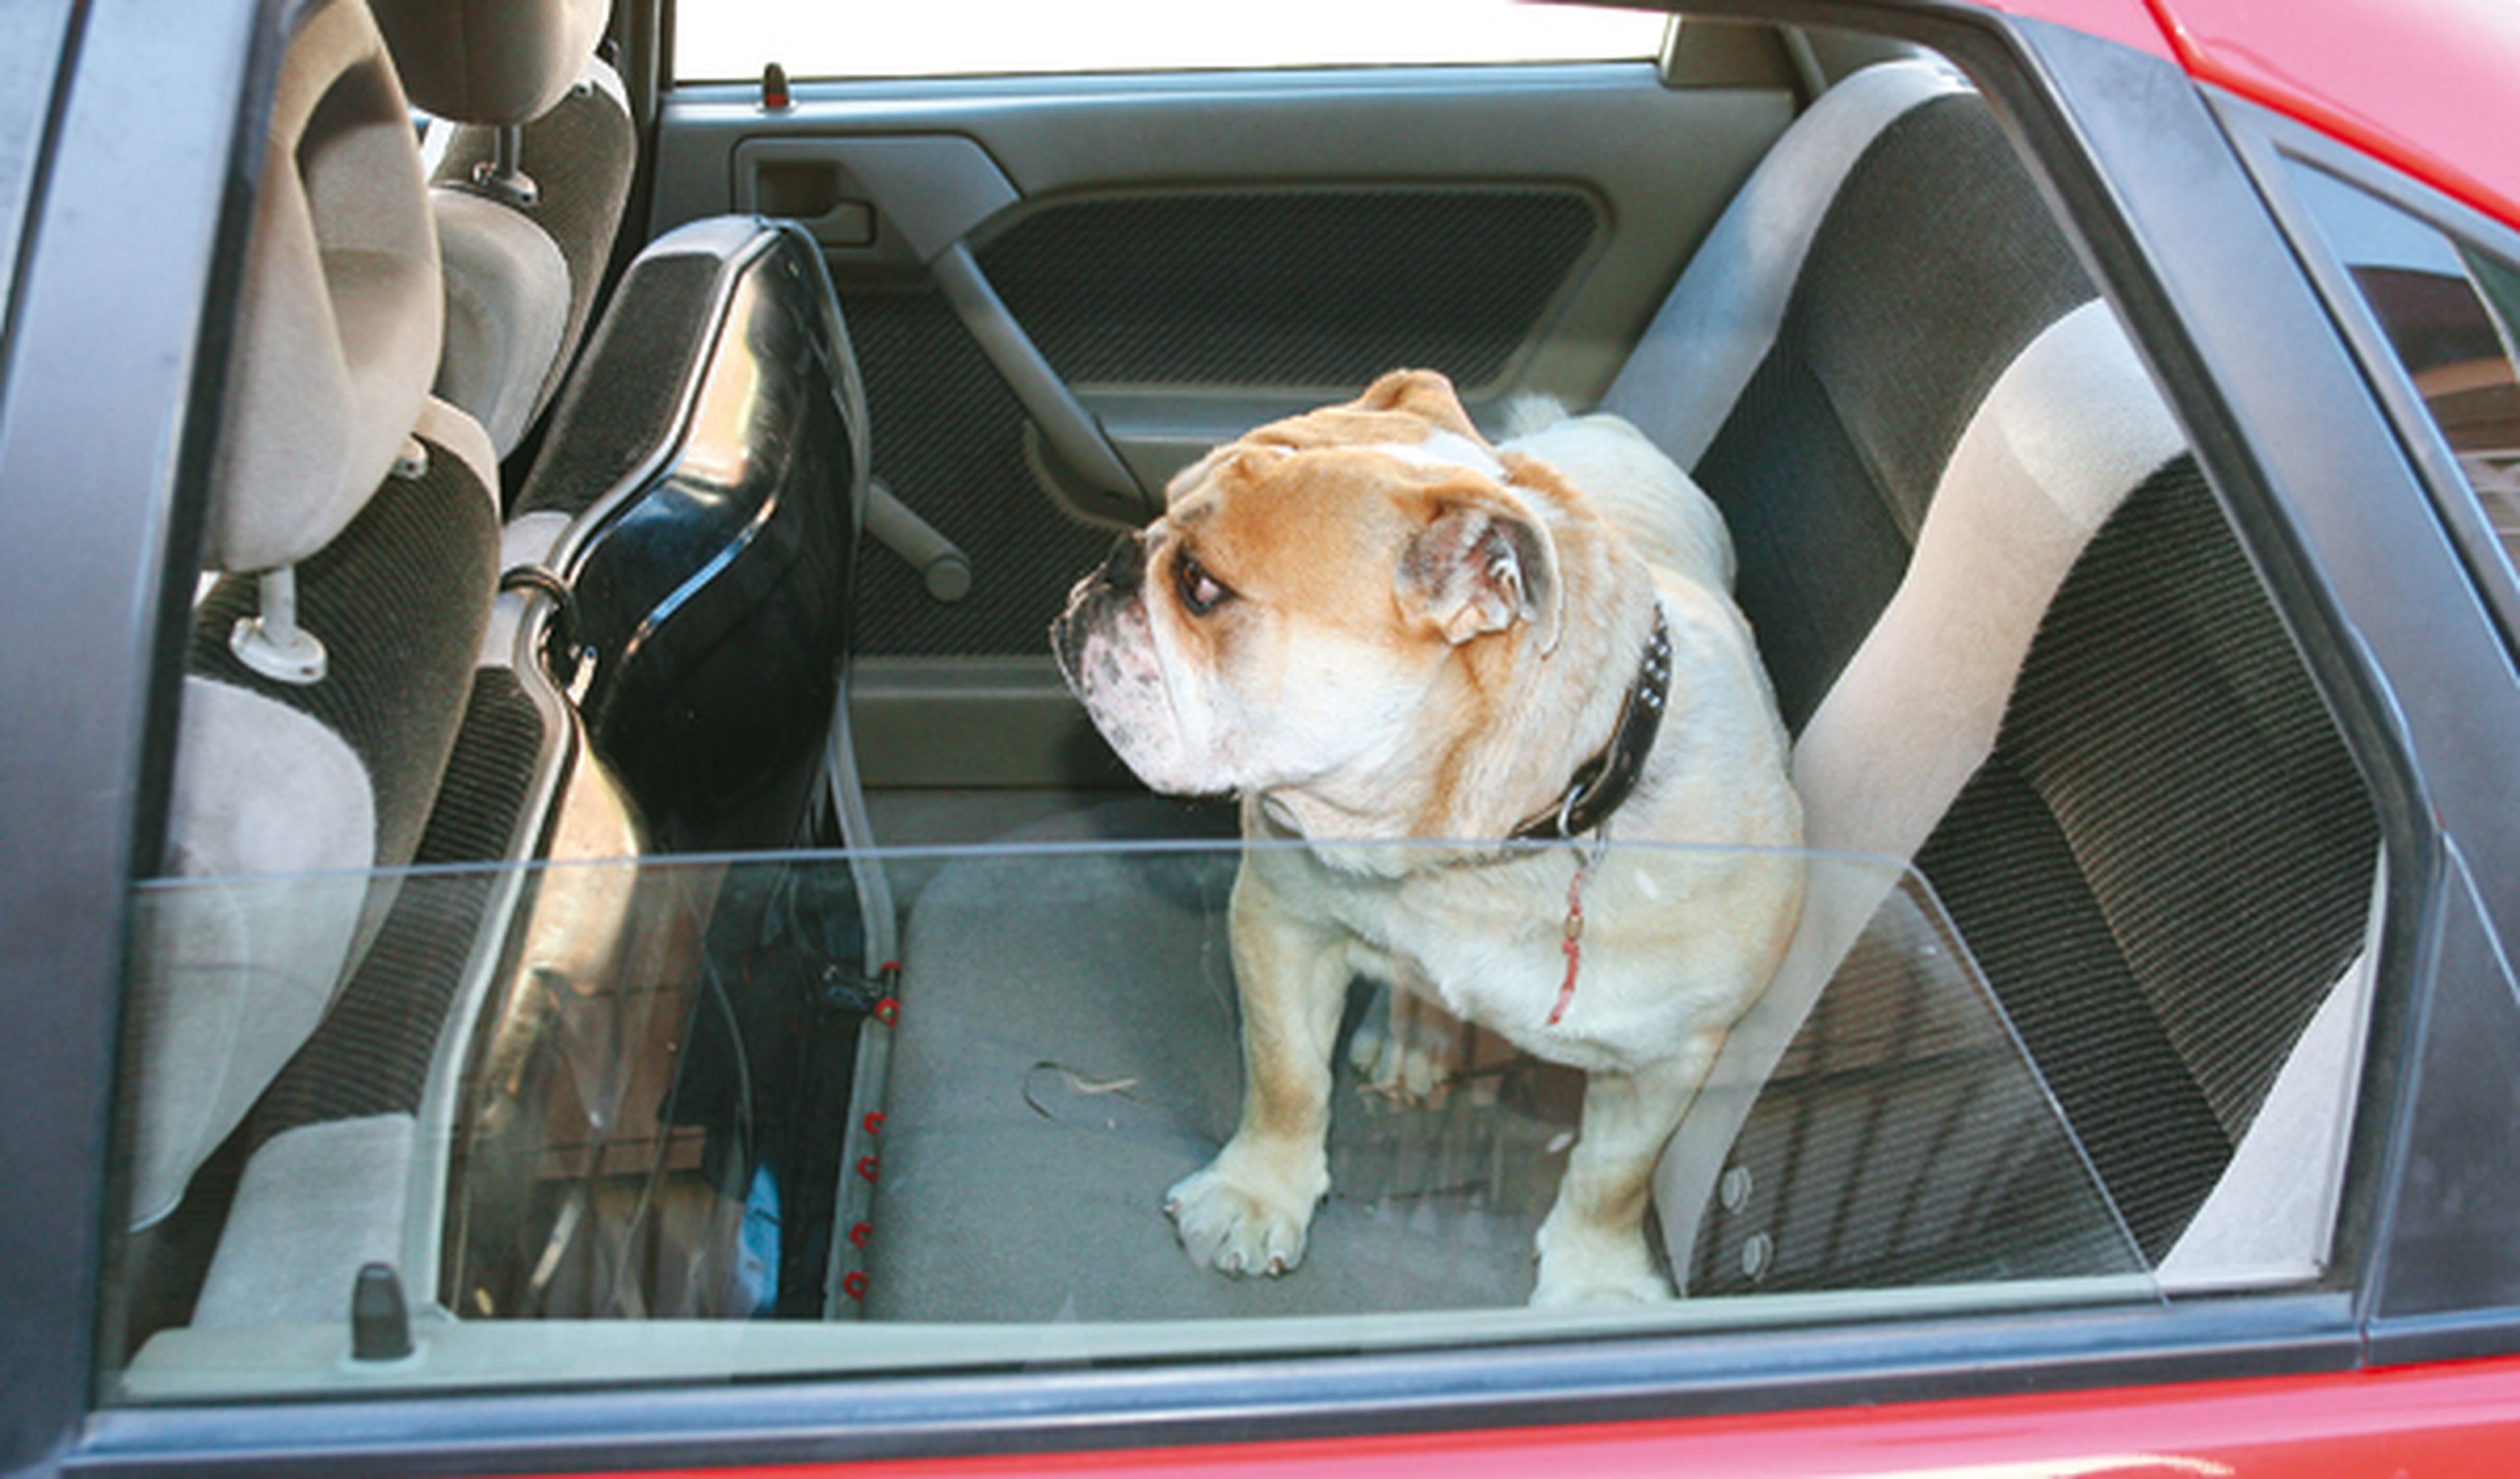 Viajar con el perro en el coche. Ejemplo de perro en asientos traseros del coche